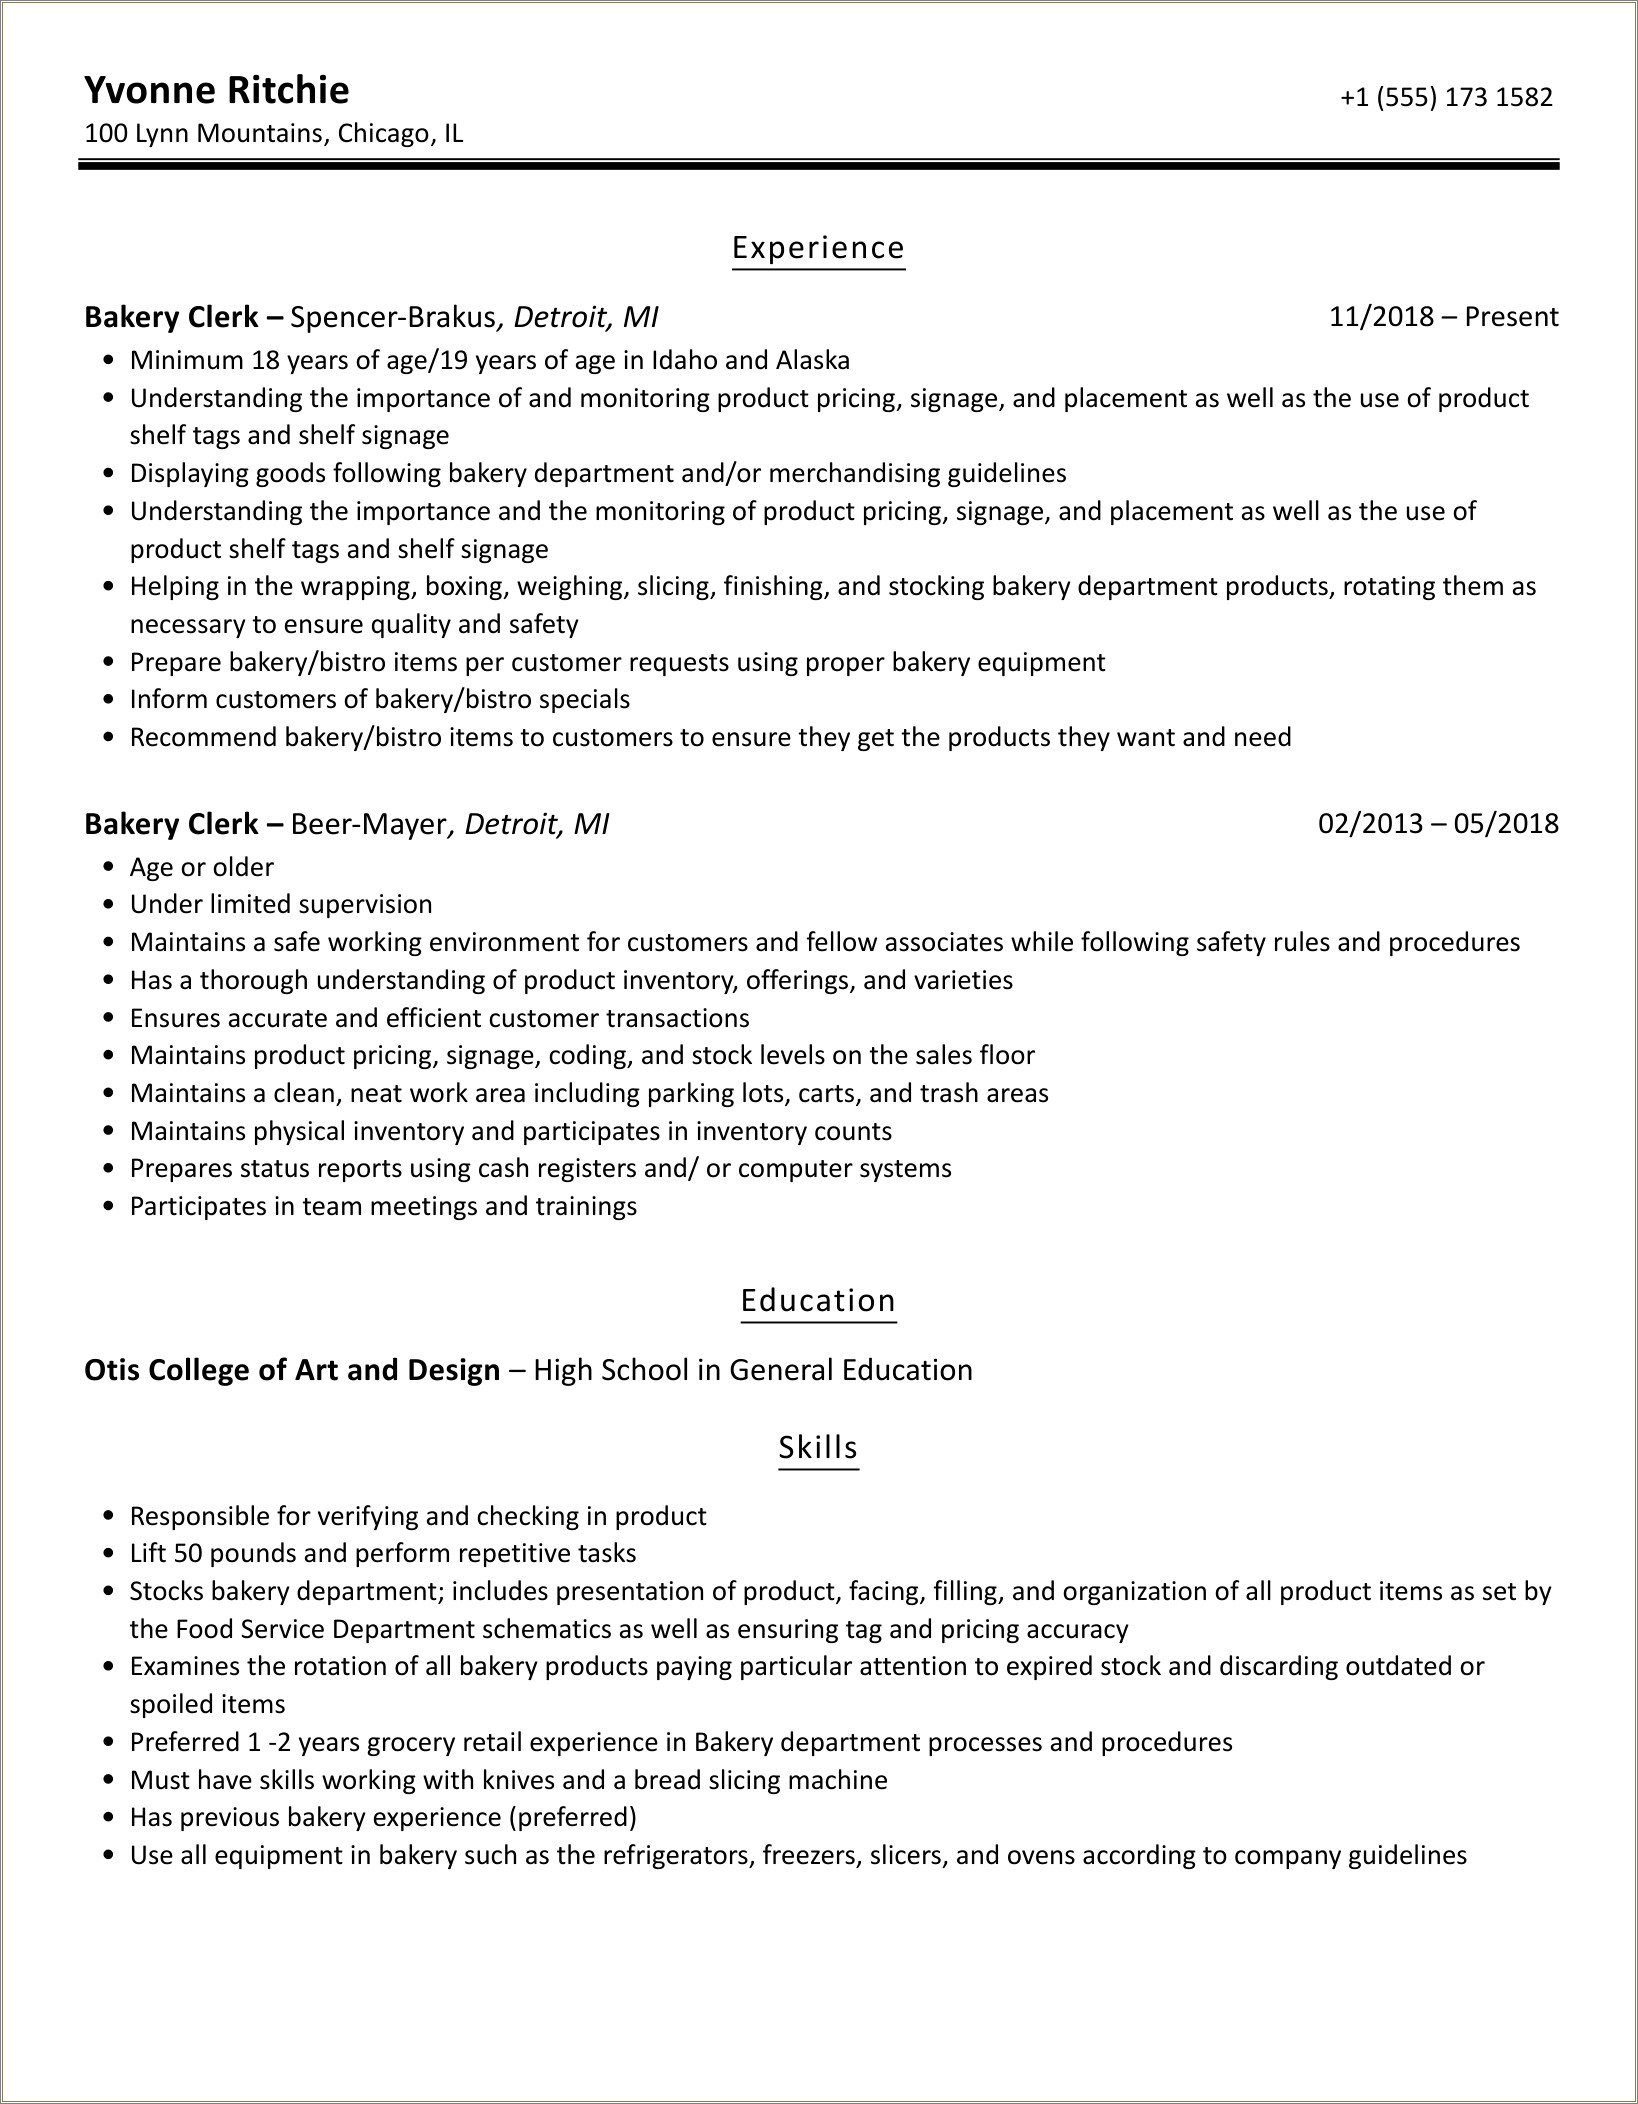 Bakery Clerk Job Description For Resume